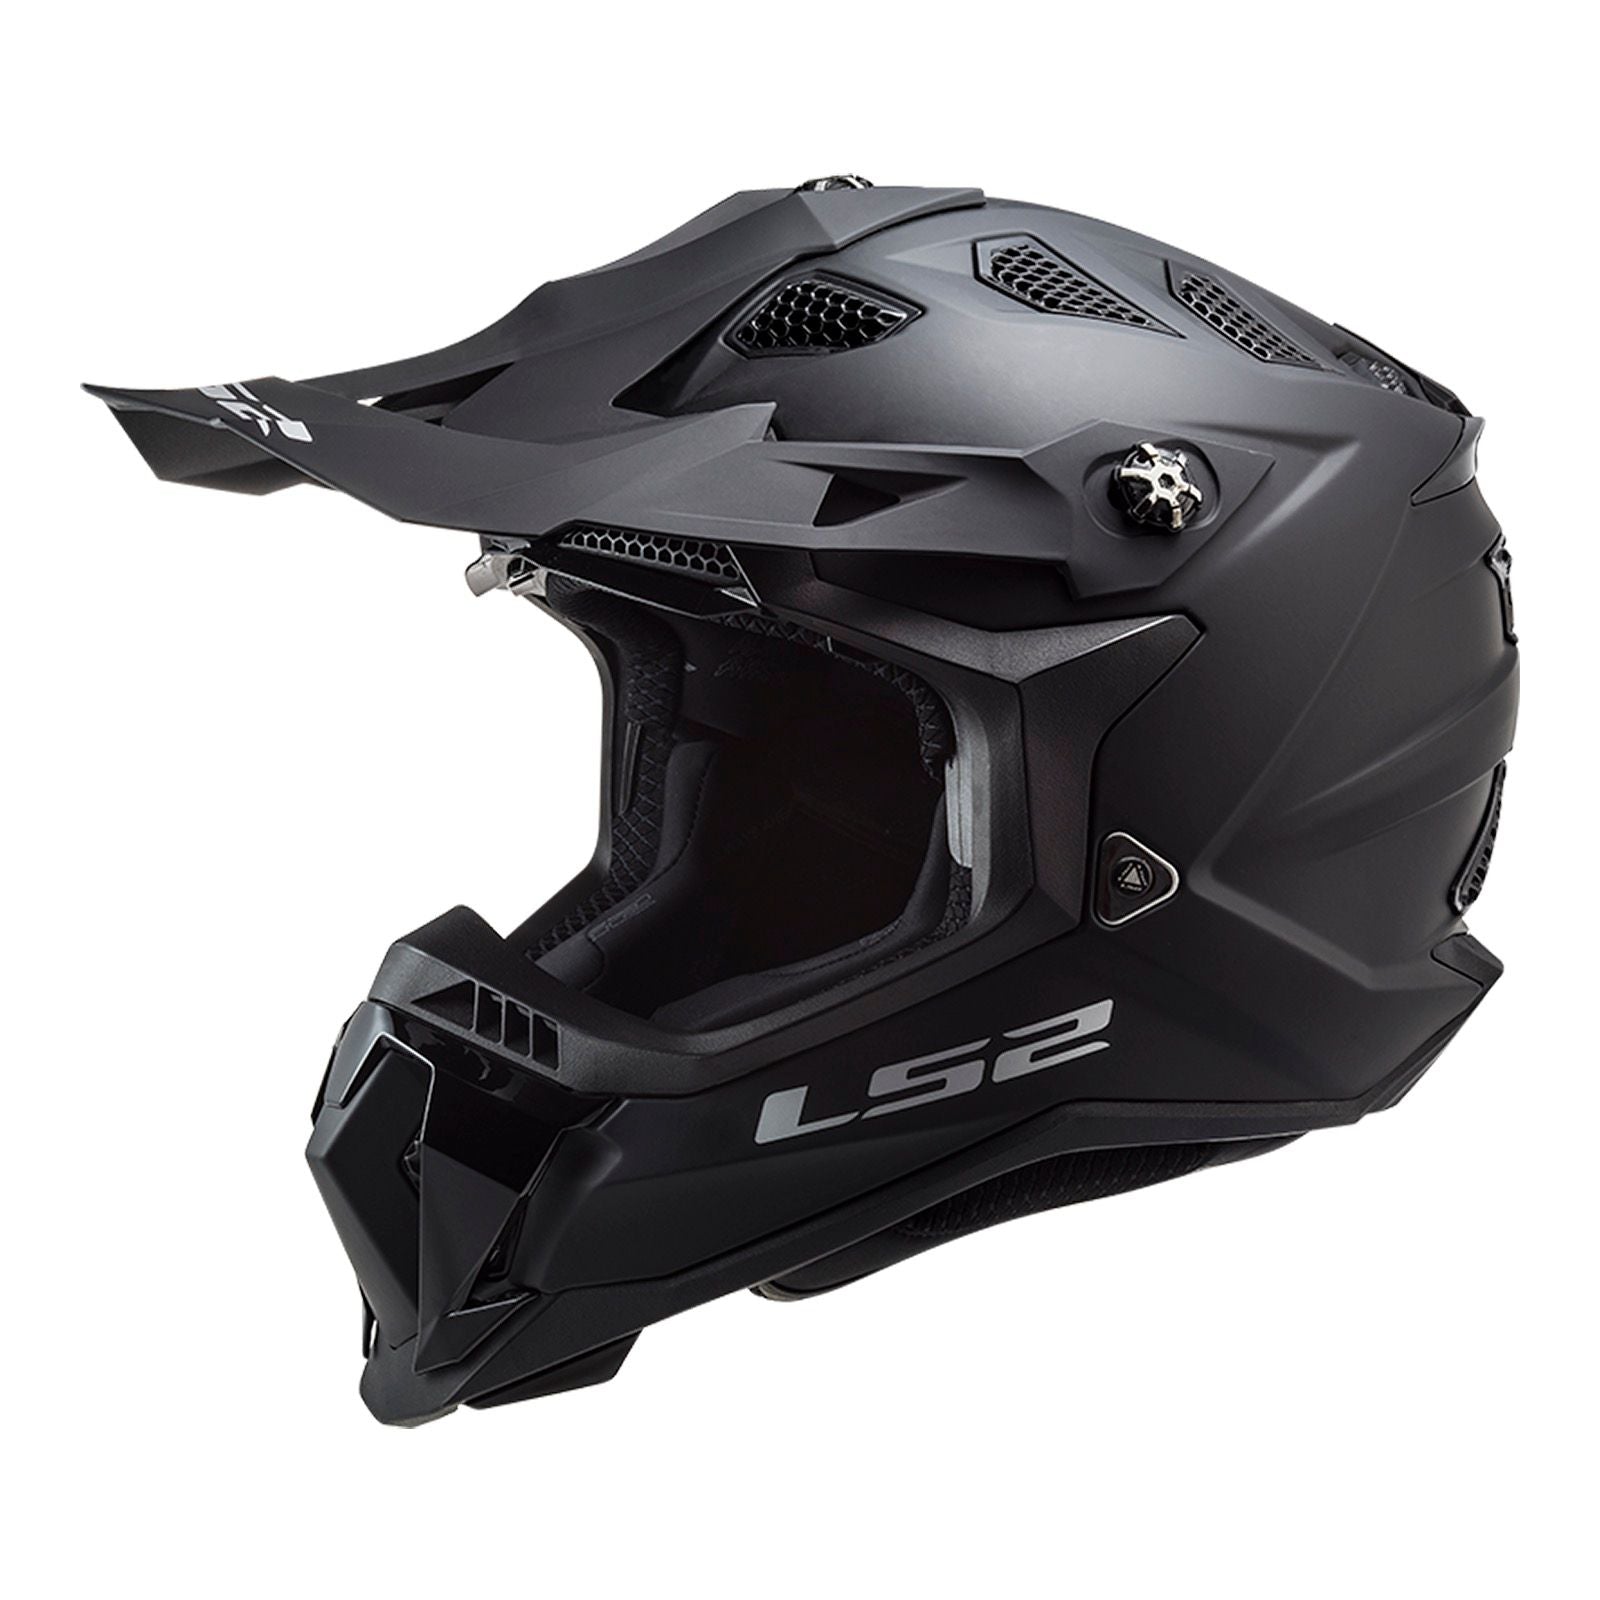 New LS2 MX700 Subverter EVO Noir Helmet - Matte Black (S) #LS2MX700SOLMBS